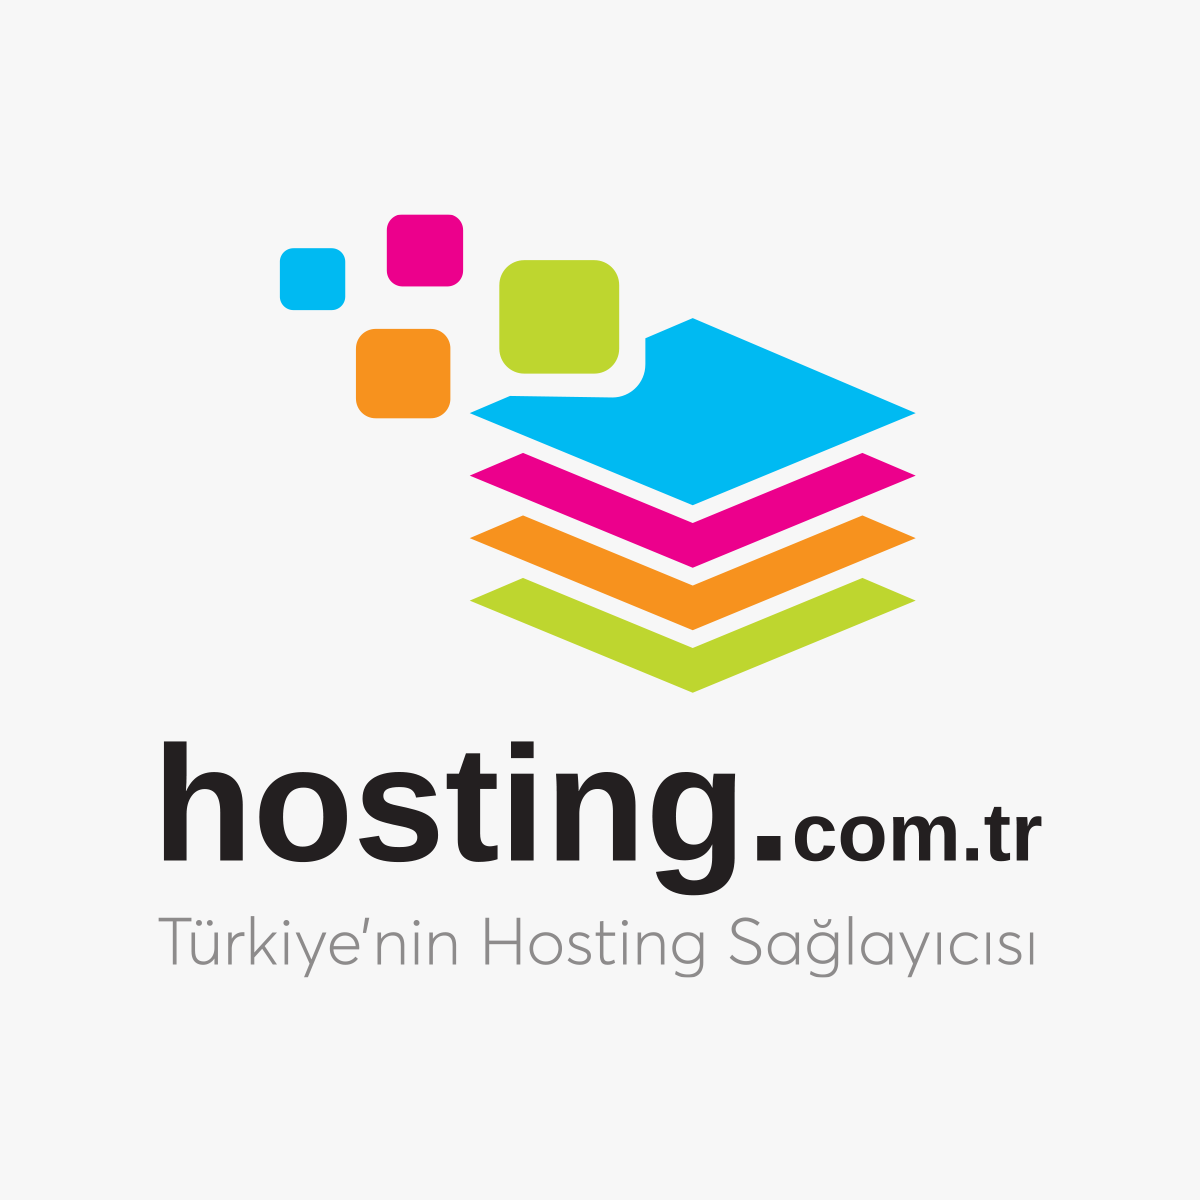 www.hosting.com.tr